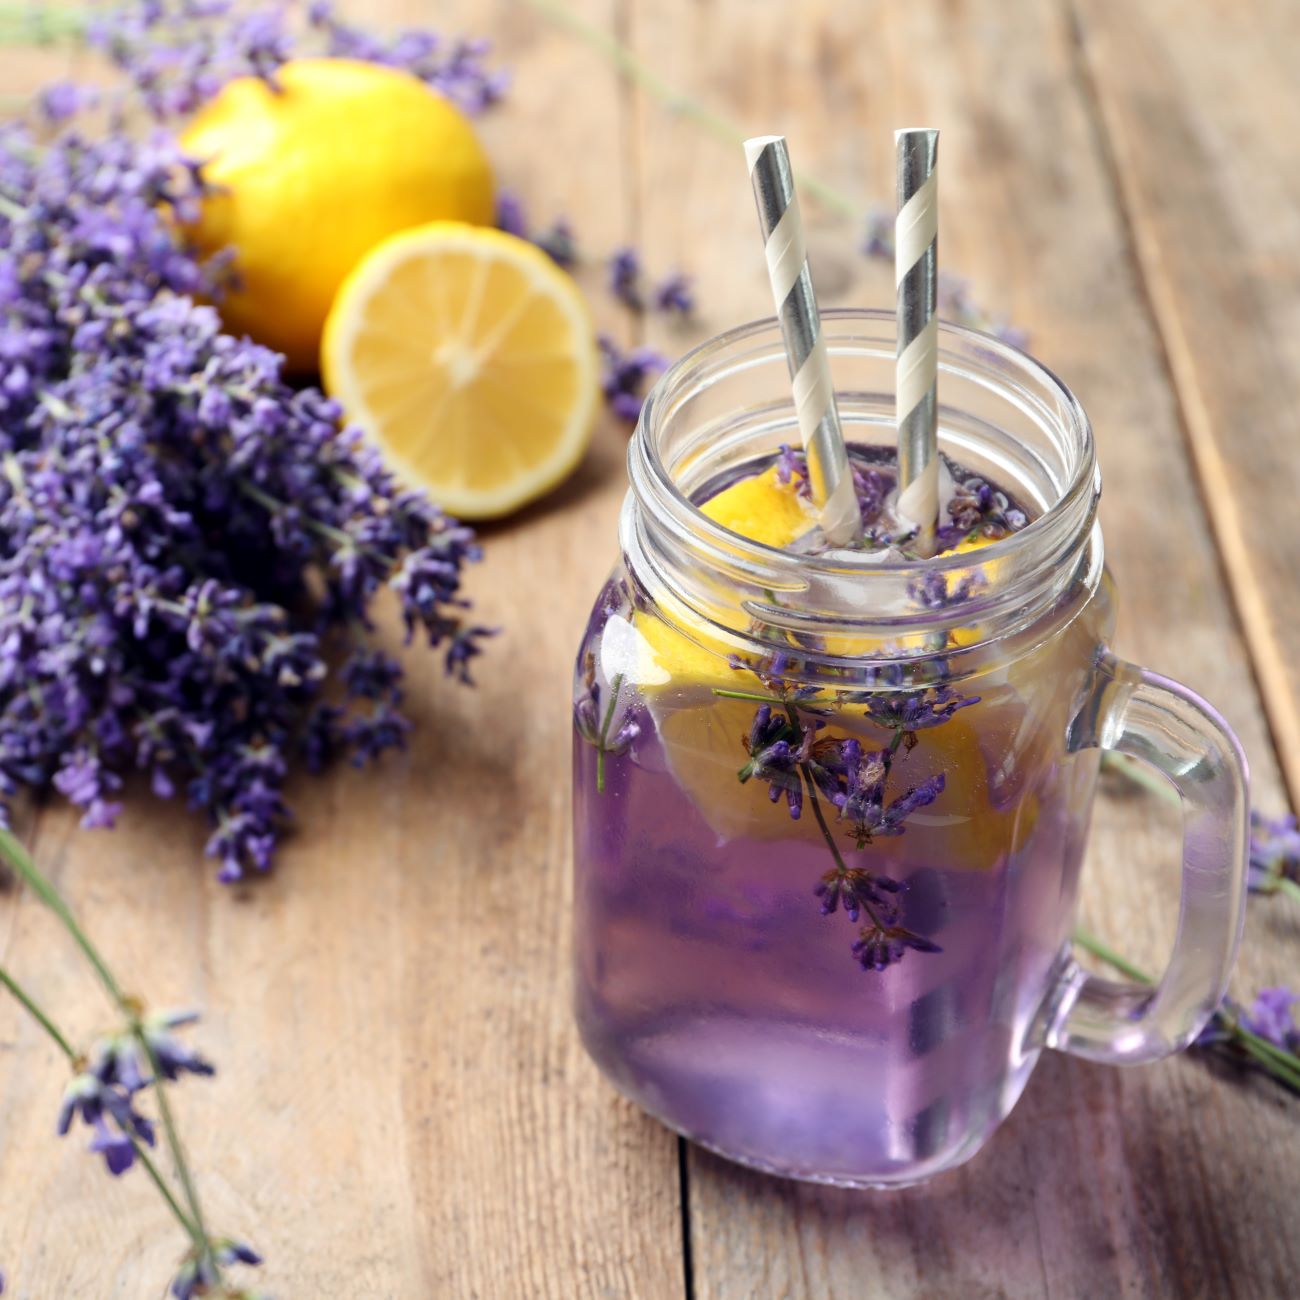 Lavendel-Limonade wird in einem Glas mit Henkel und Strohhalm serviert.